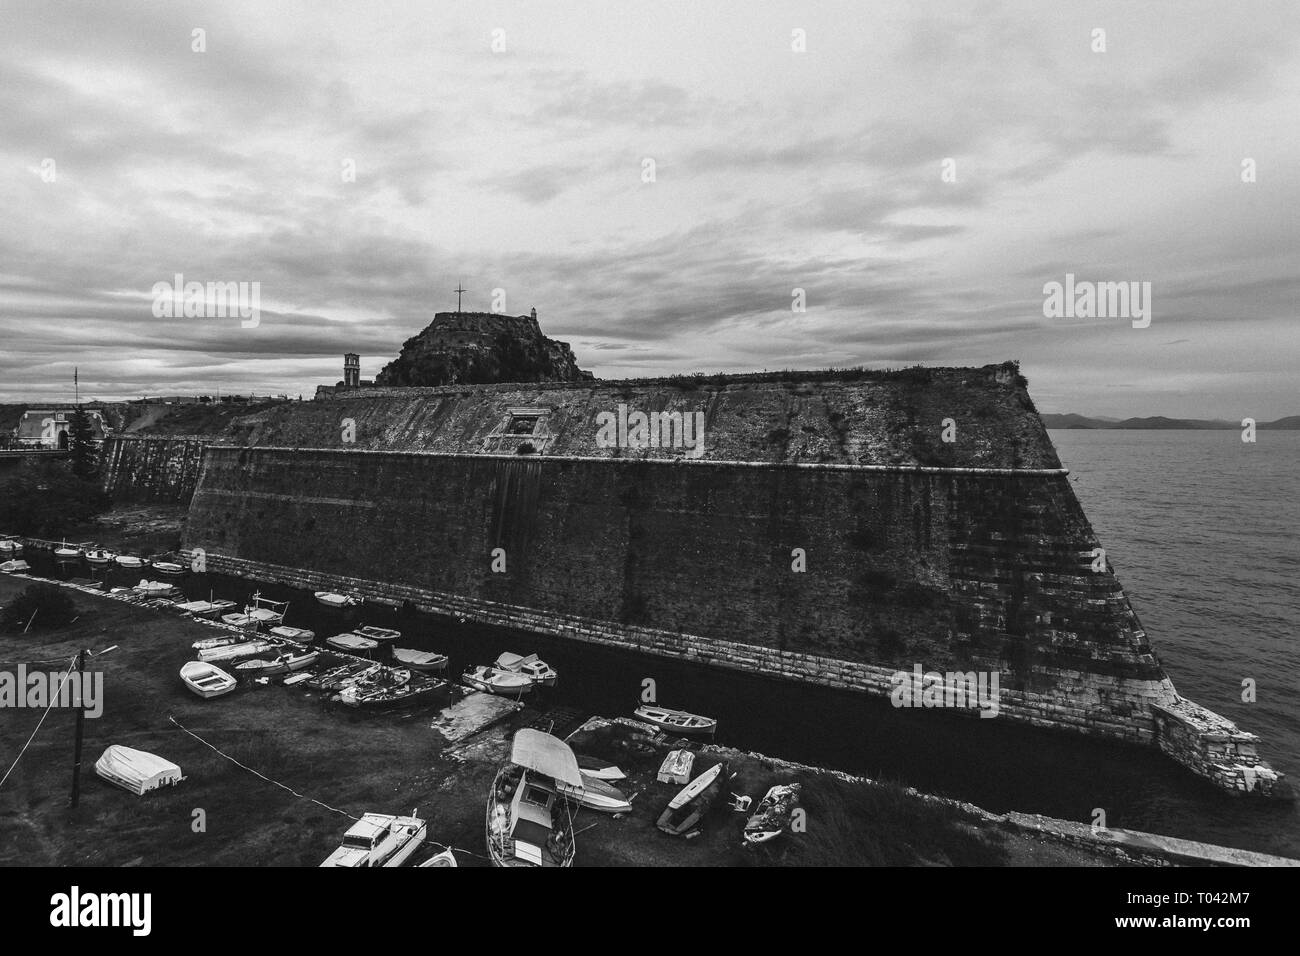 Efficace en noir et blanc de remparts de l'ancienne forteresse vénitienne de Corfou, l'île de Corfou, Grèce. Lieu historique et touristique intéressant Banque D'Images